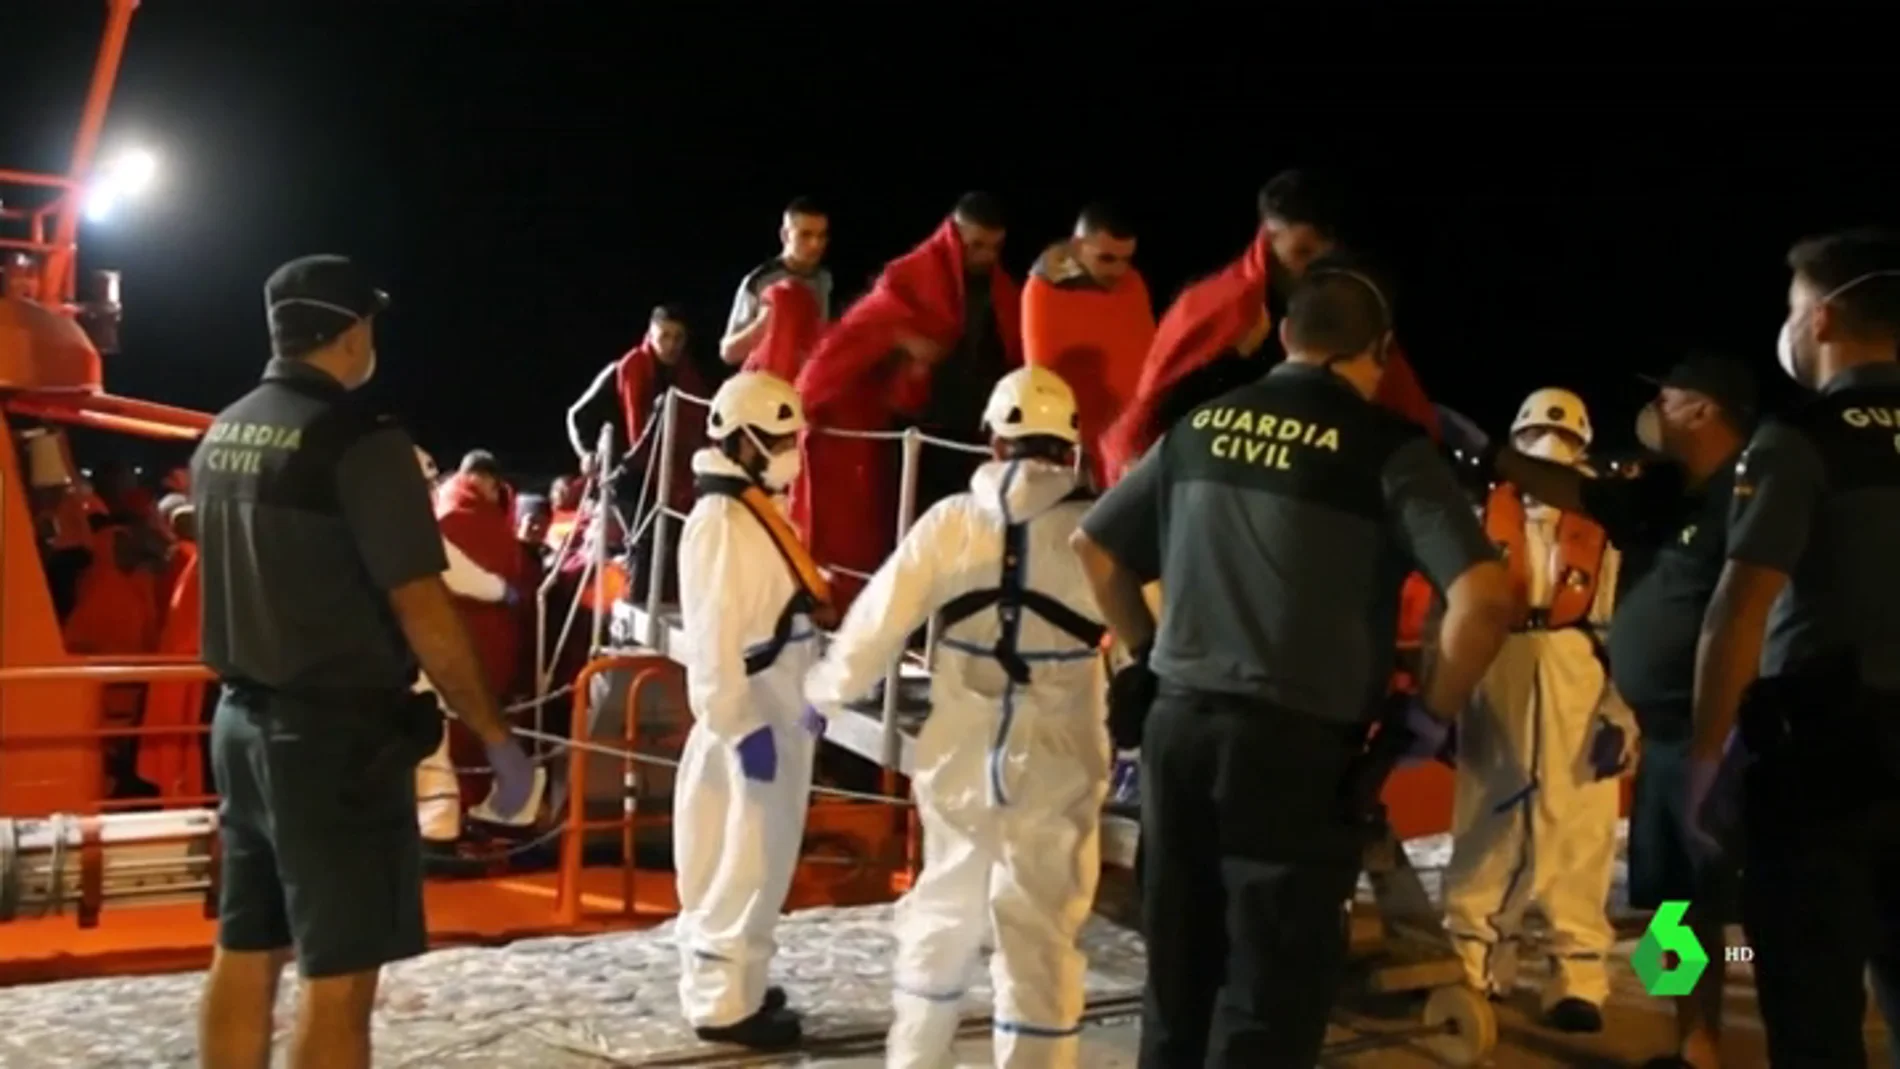 Más de 800 migrantes rescatados frente a las costas españolas en las últimas 48 horas